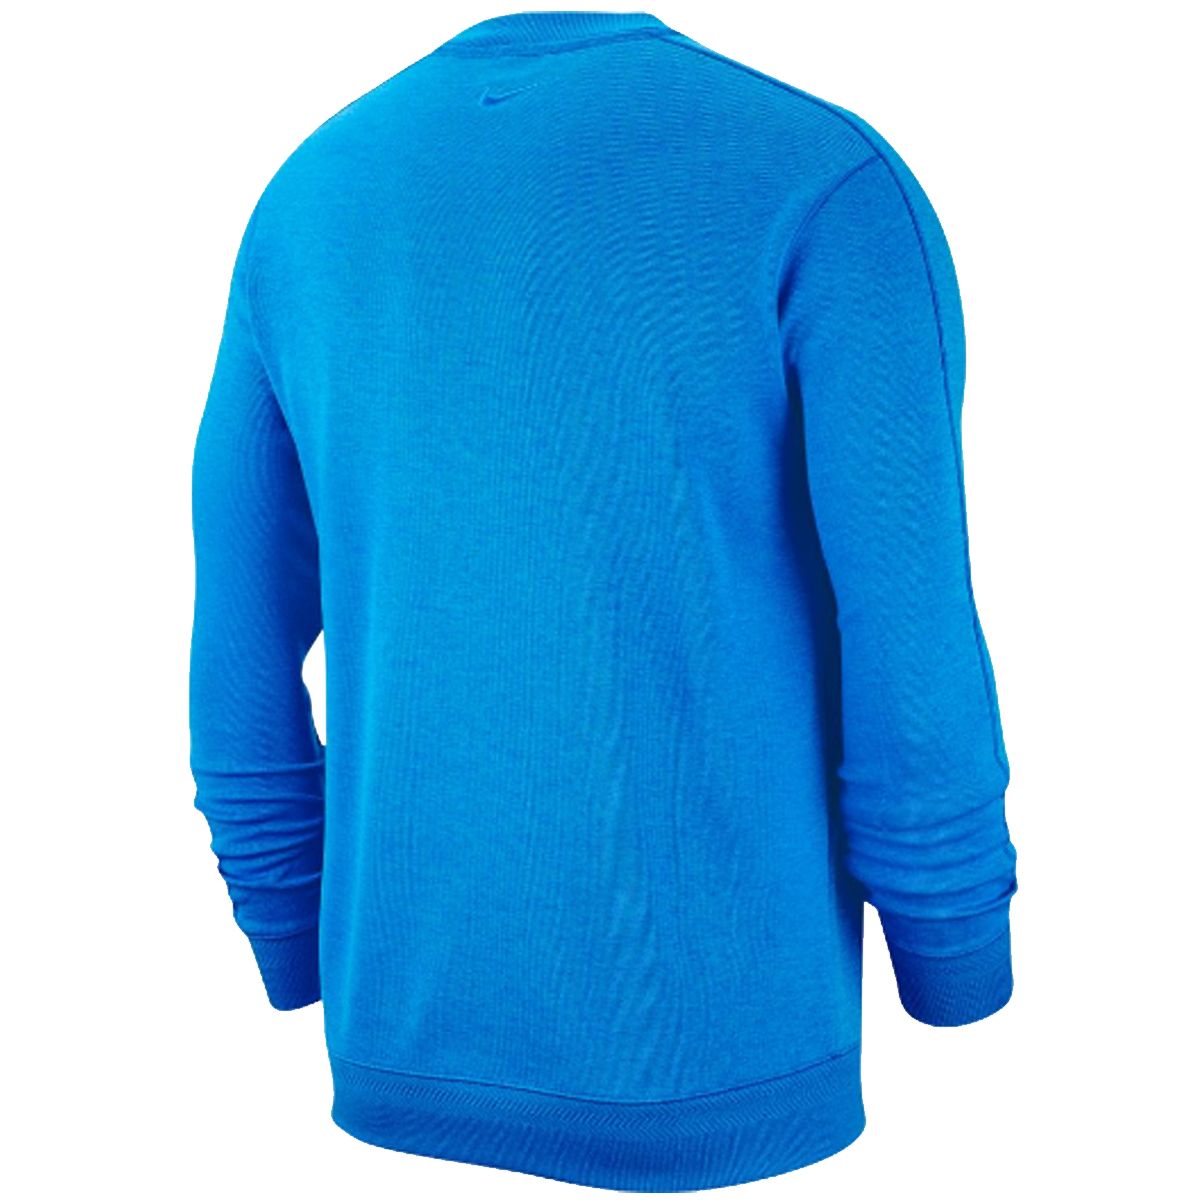 Nike Dry Top Crew Sweater AV4127 